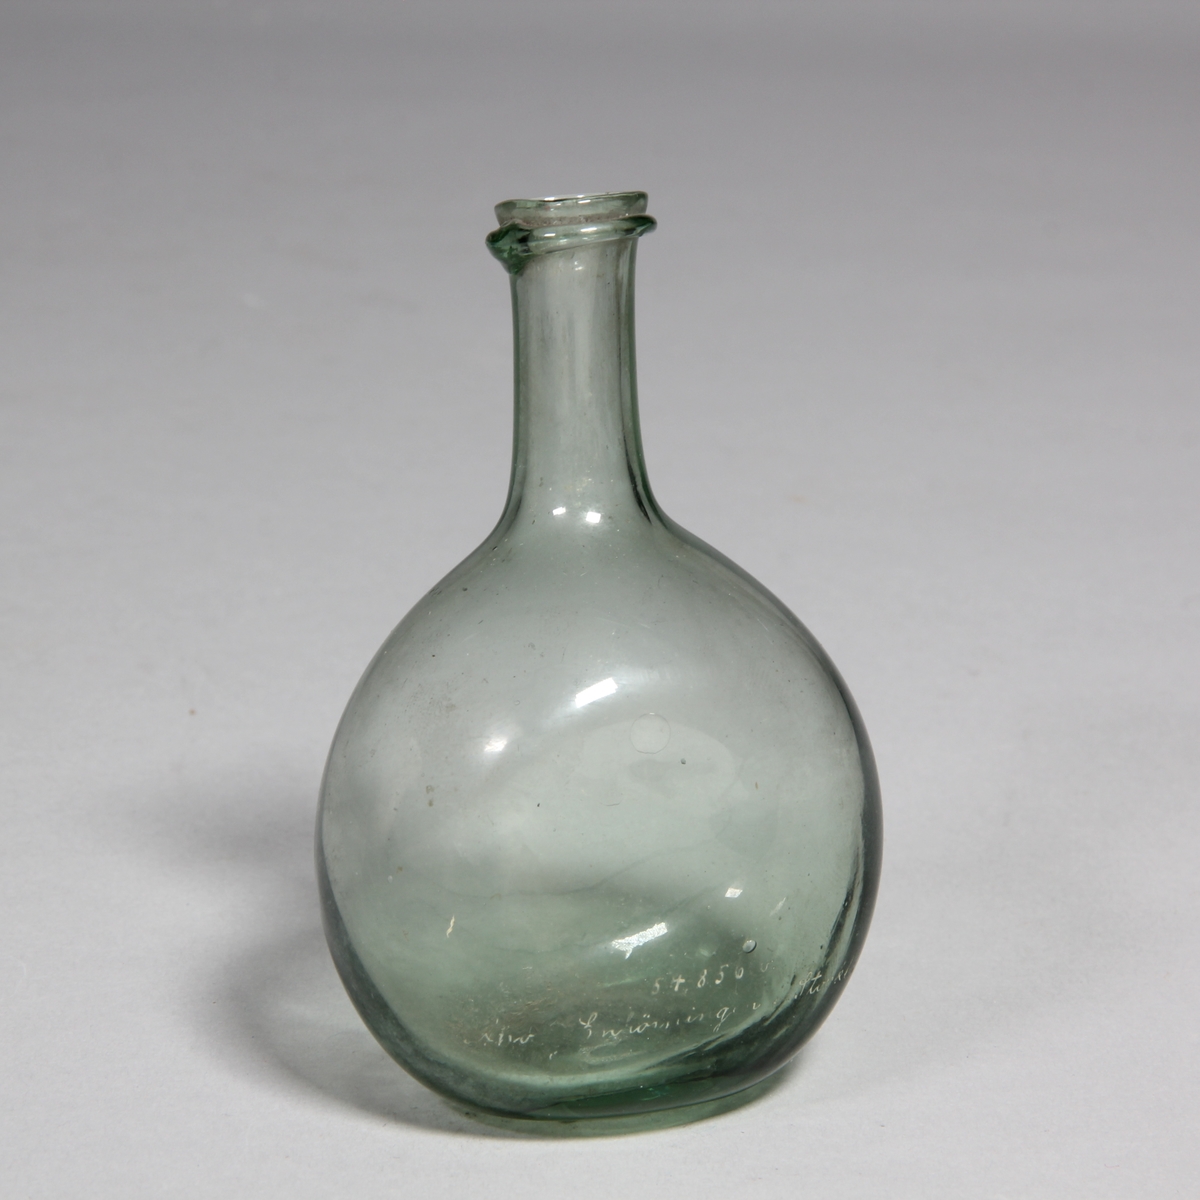 Flaska av grönt glas, rund med tillplattade sidor, lång hals.